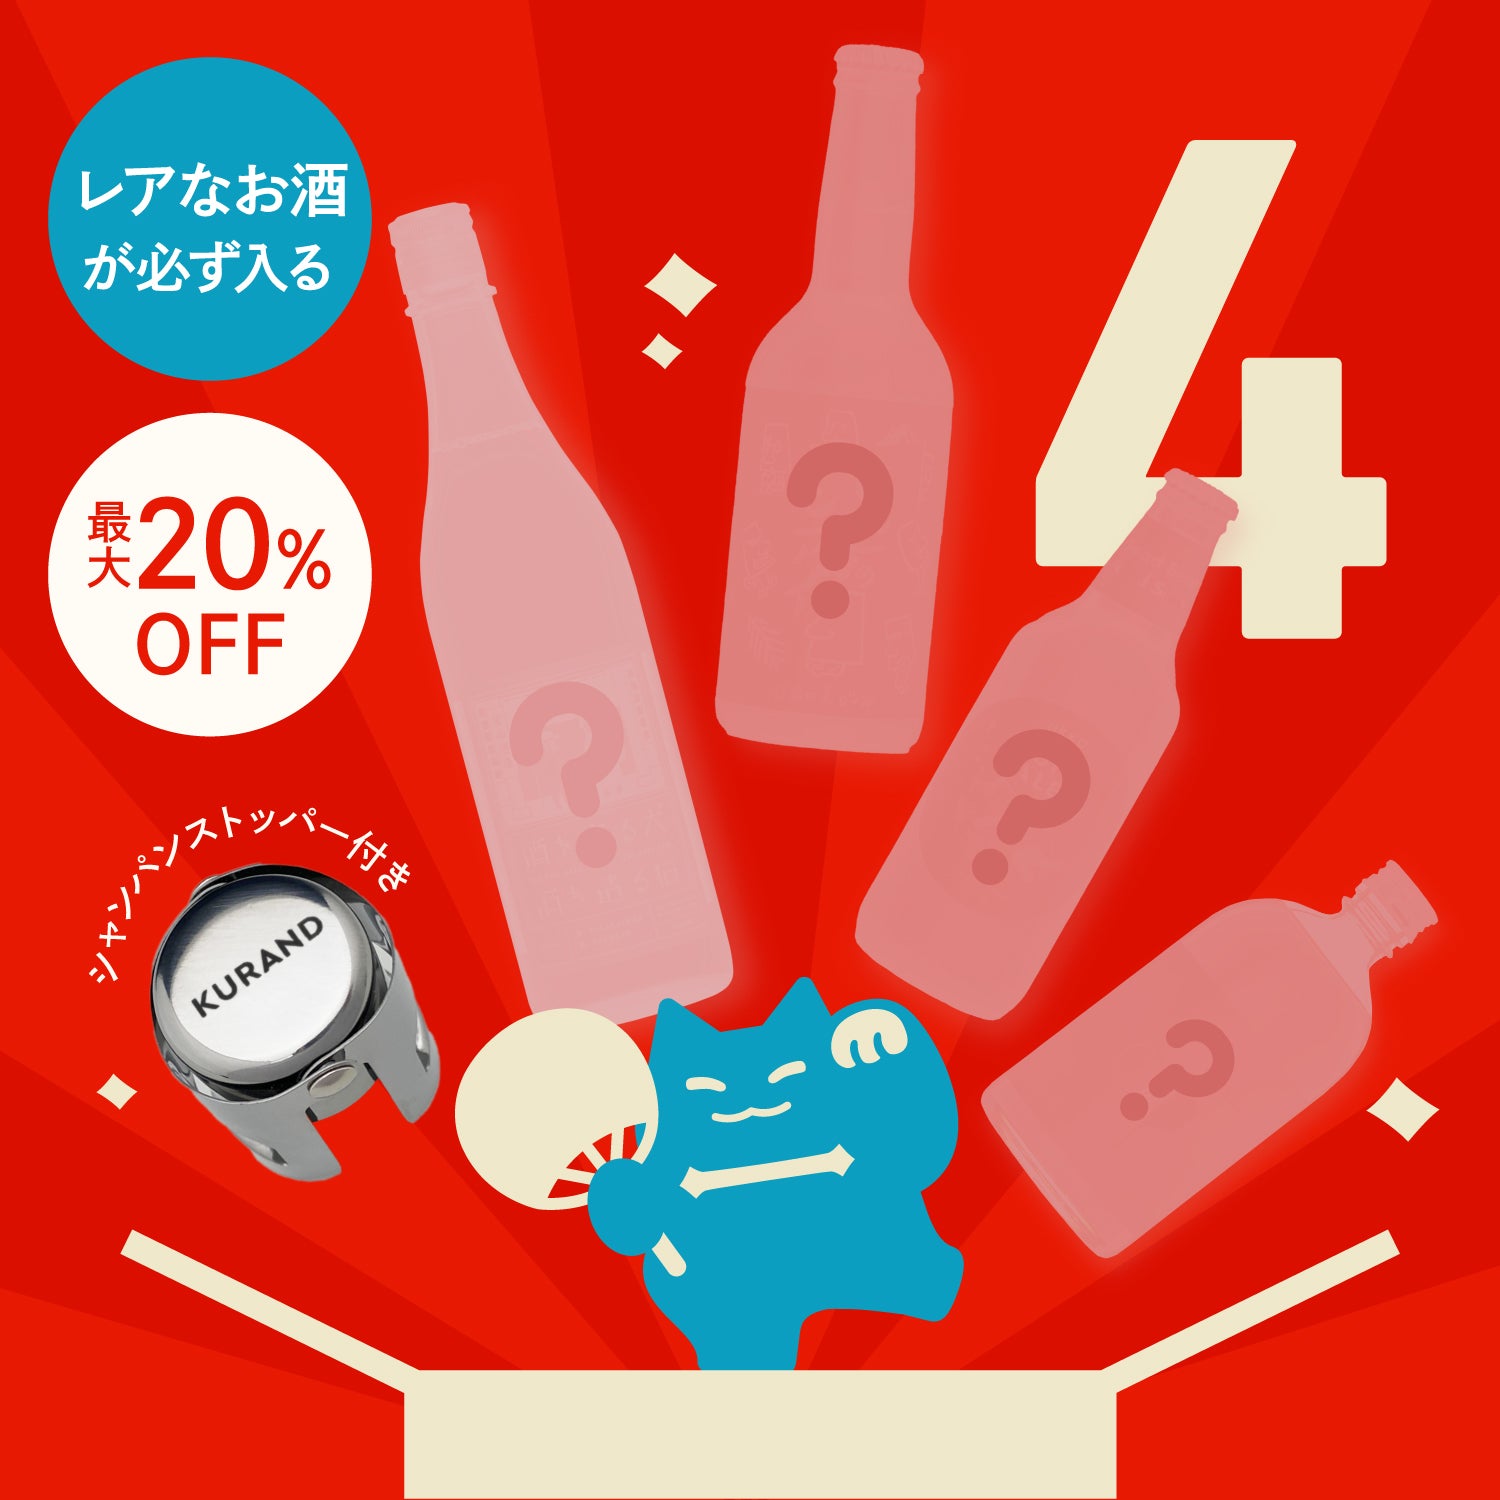 【最大20%OFF】酒ガチャ夏の大セール限定 4連酒ガチャ